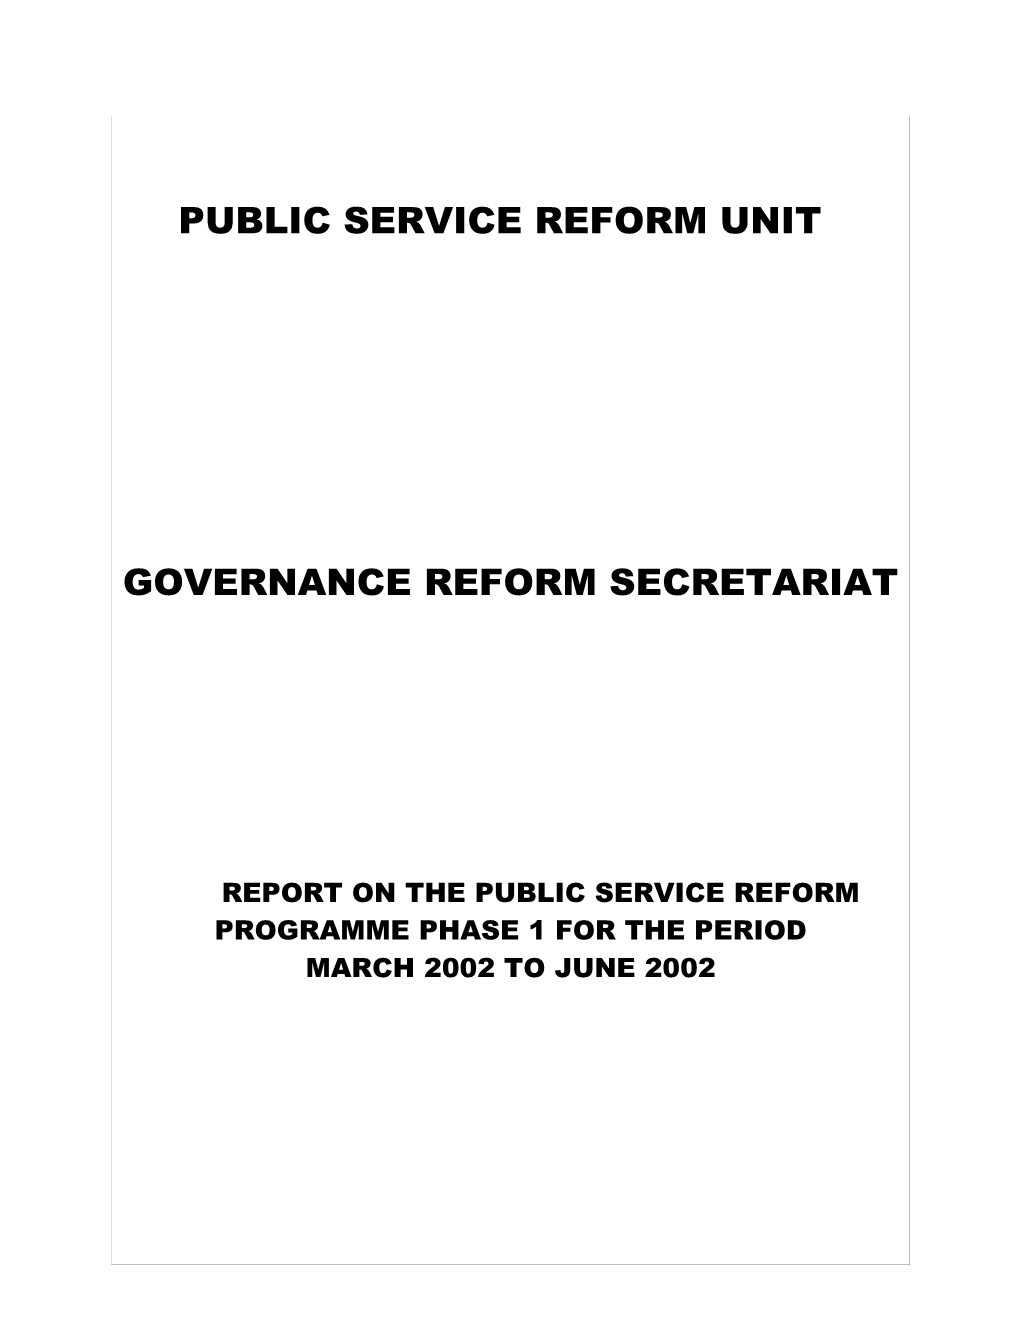 Public Service Reform Unit s1